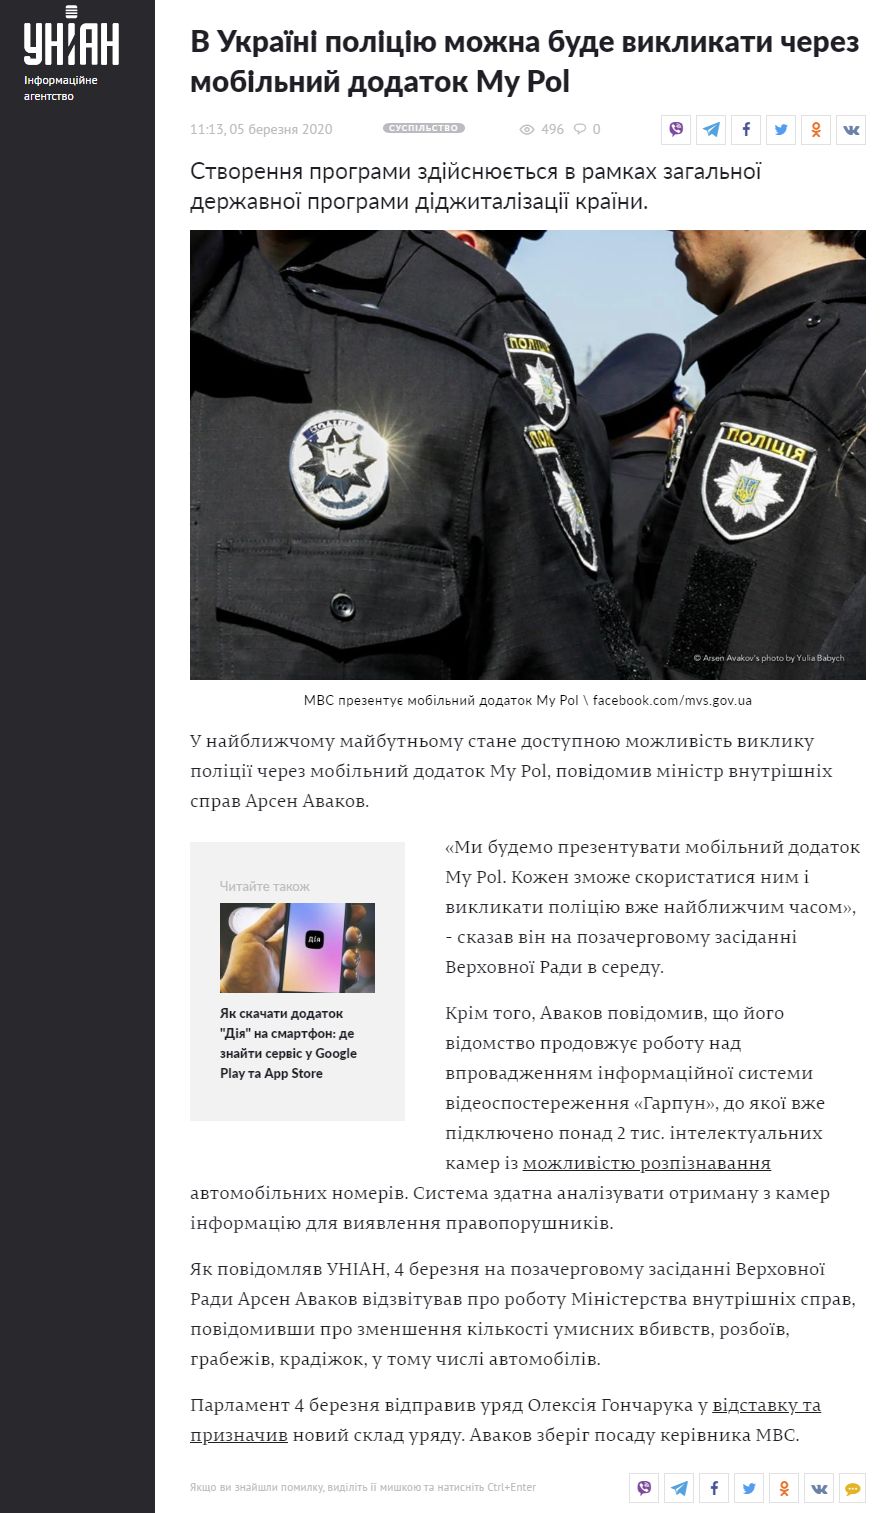 https://www.unian.ua/society/10902683-v-ukrajini-policiyu-mozhna-bude-viklikati-cherez-mobilniy-dodatok-my-pol.html